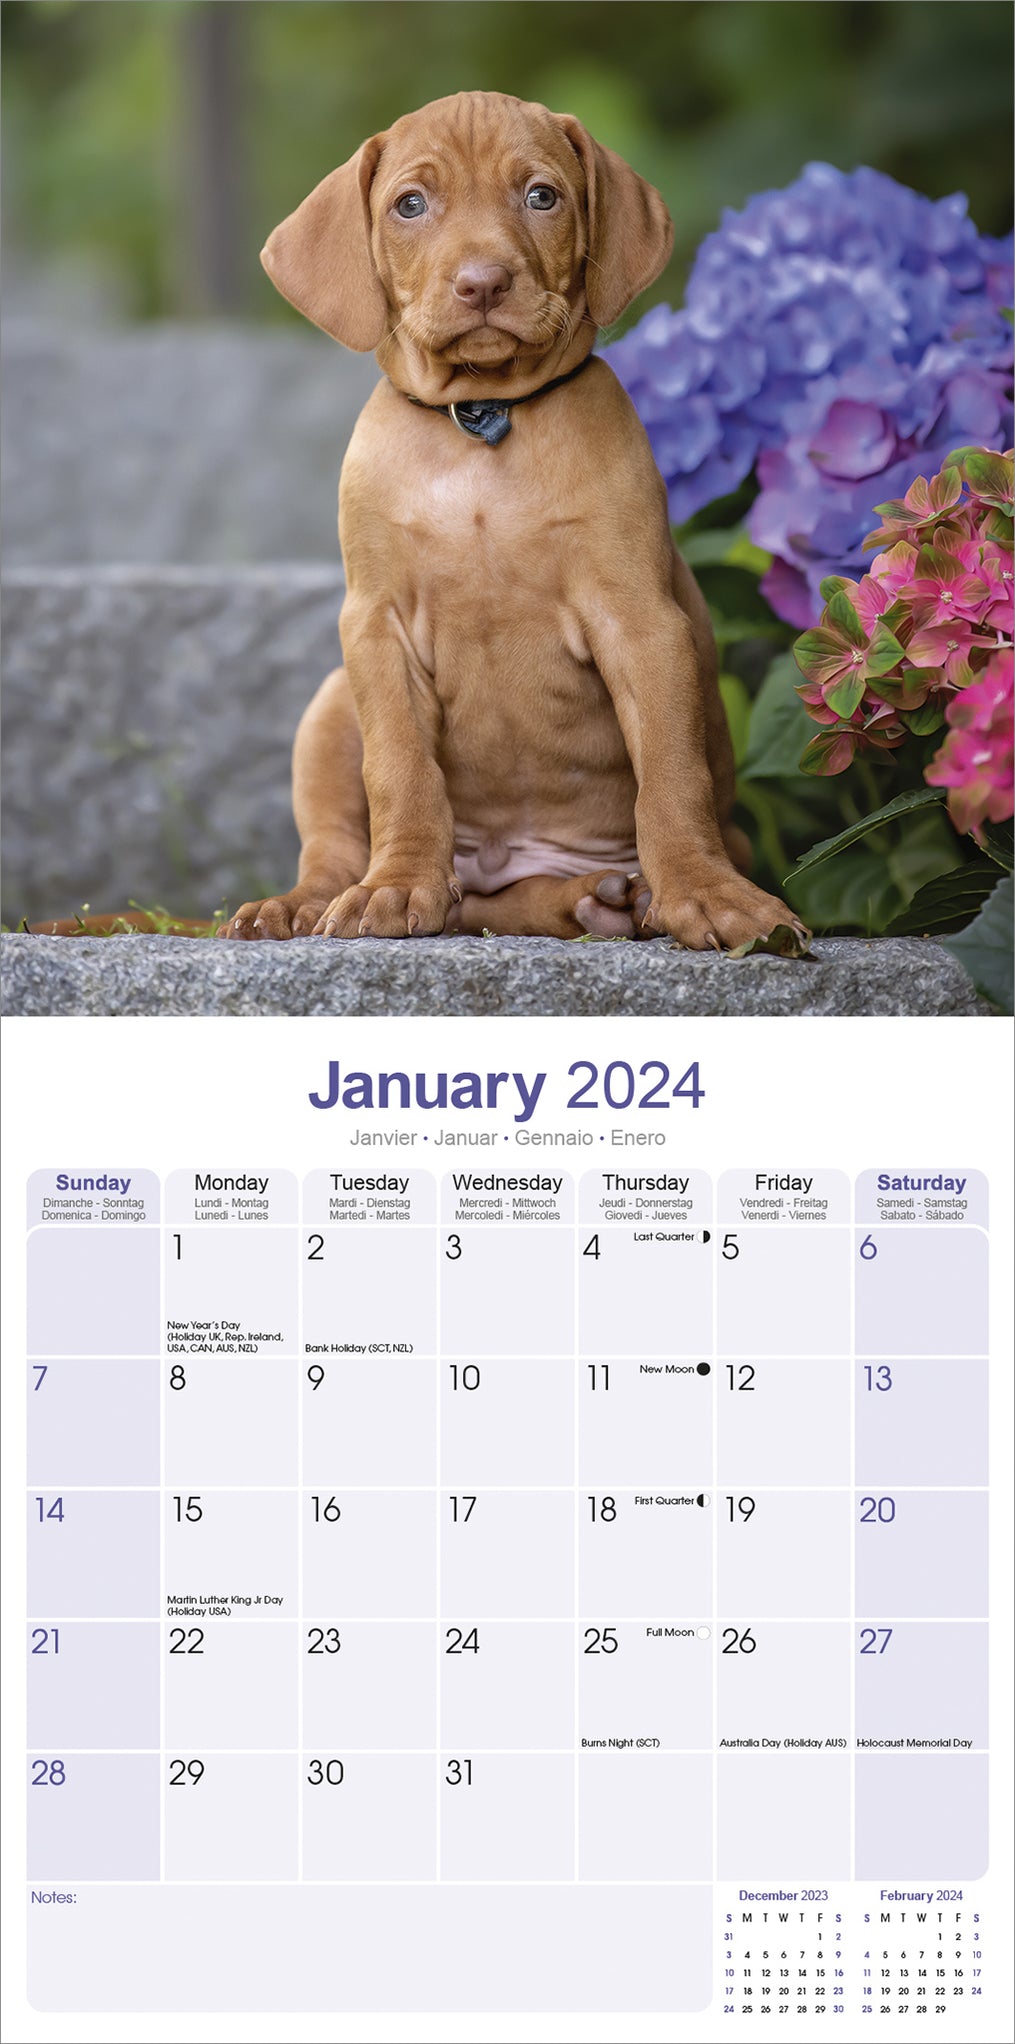 2024 Vizsla Wall Calendar Exclusive) — Calendar Club